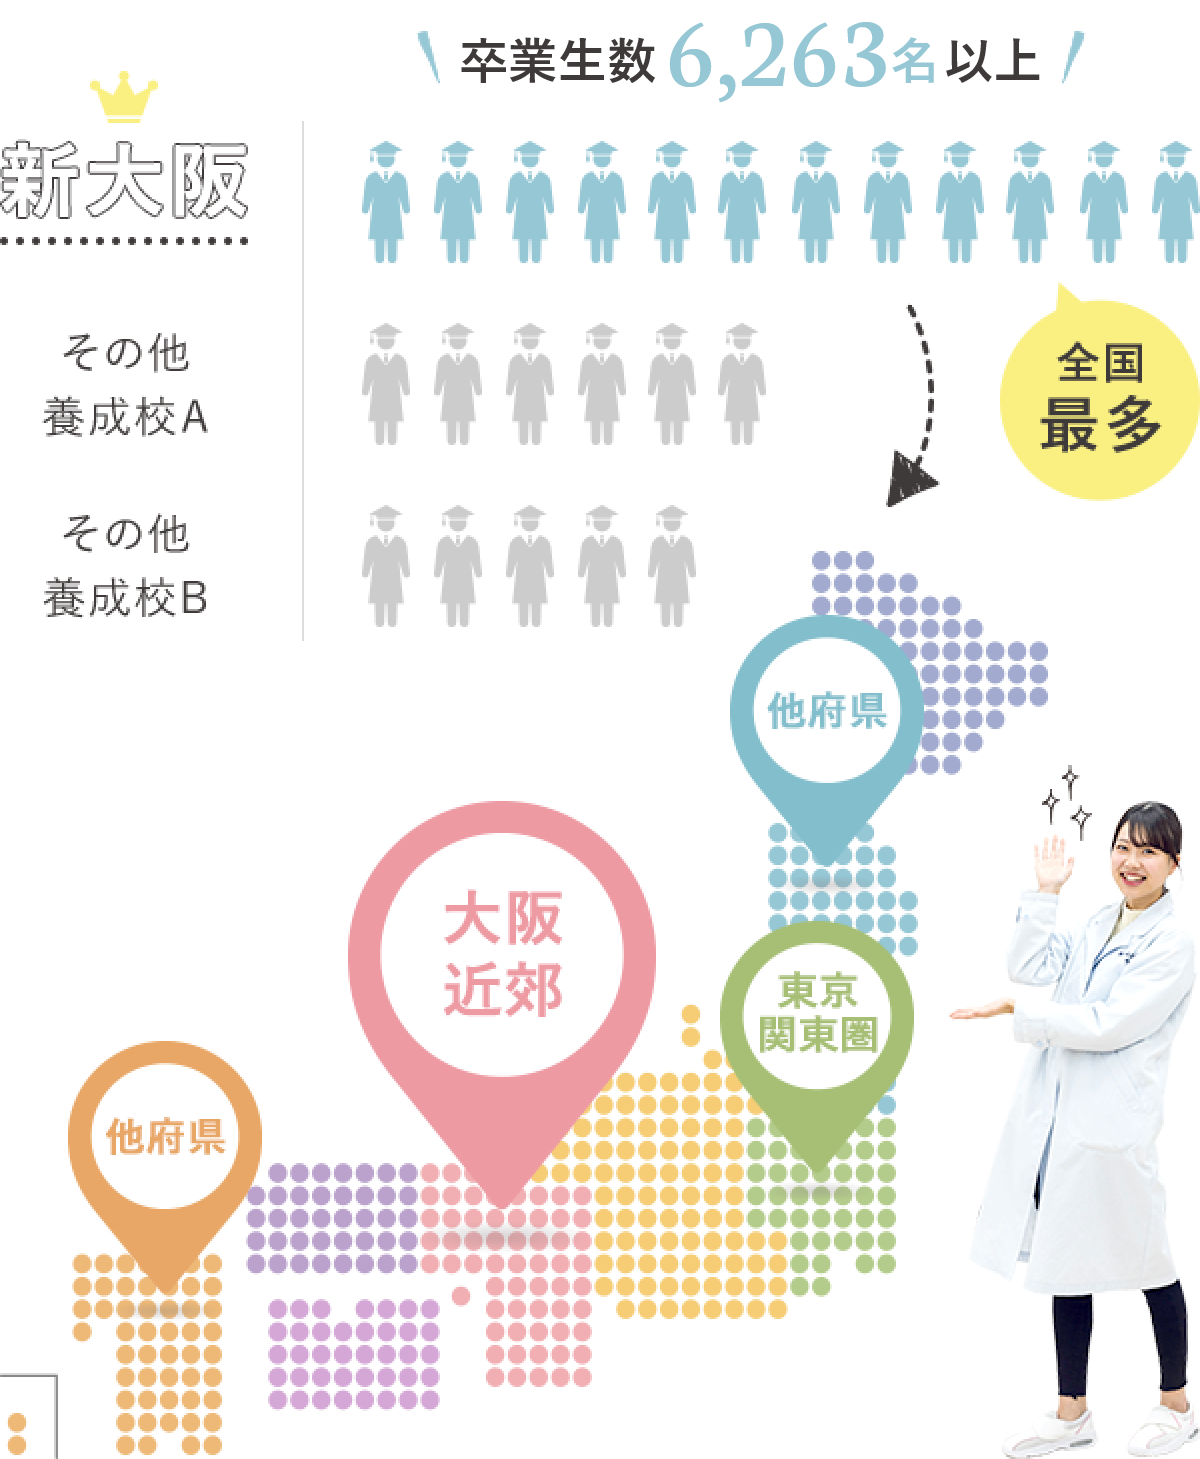 新大阪 卒業生数6,263名以上 全国最多